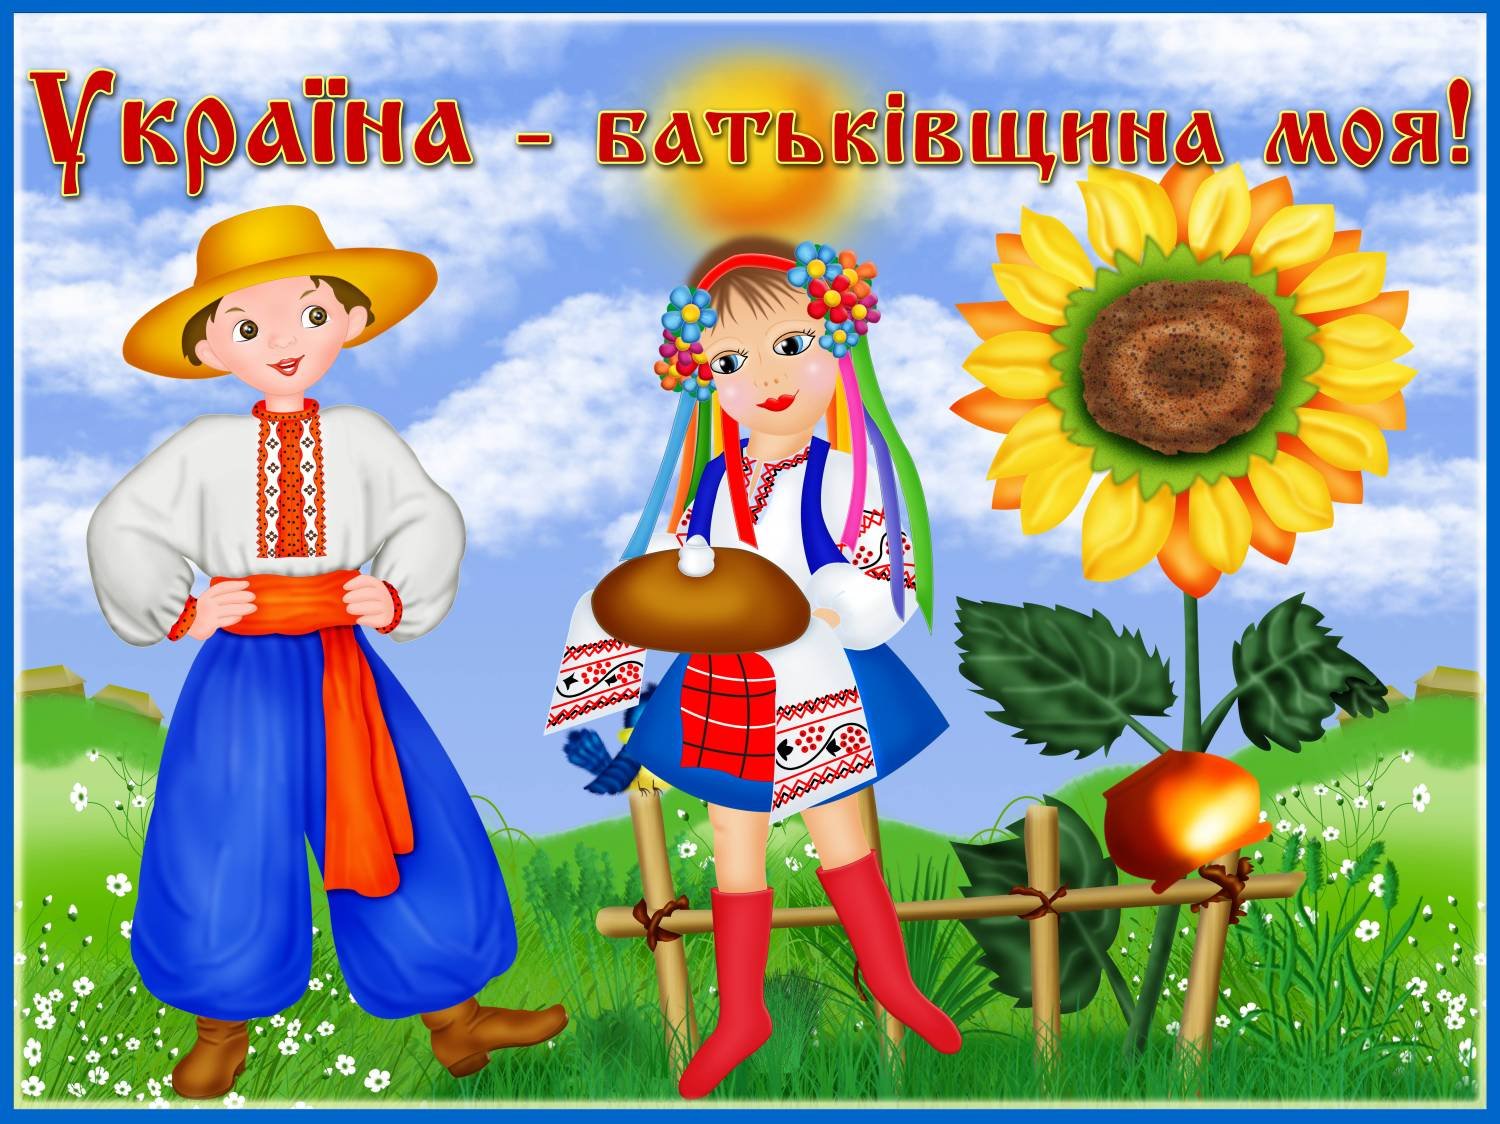 Картинки україна моя батьківщина (68 фото) » Юмор, позитив и много смешных картинок